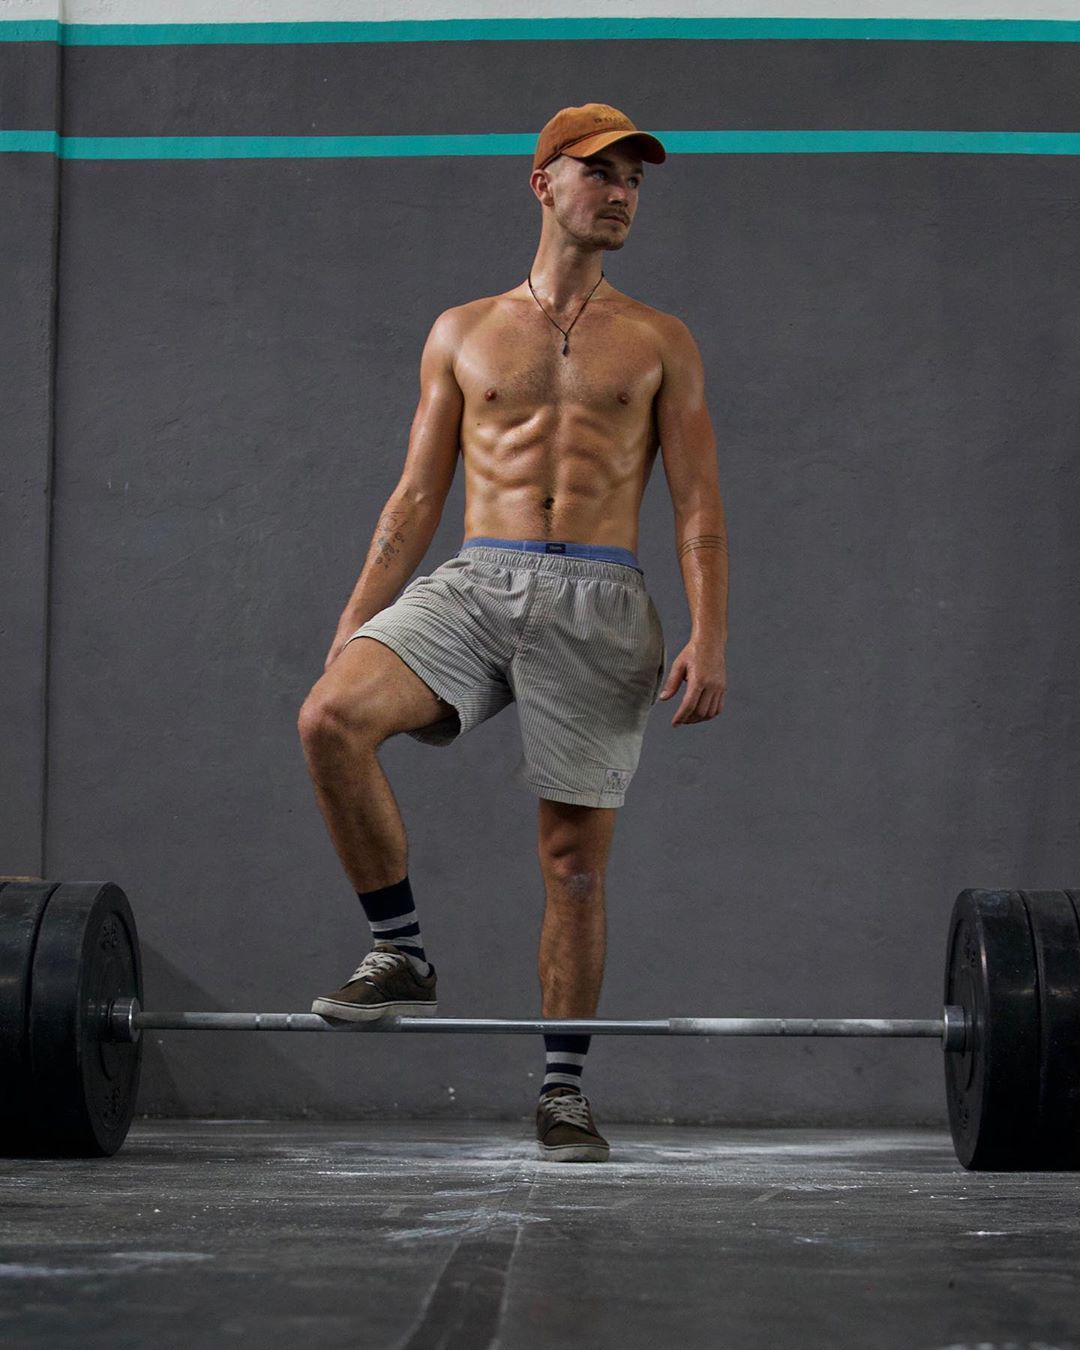 Que con el CrossFit se te pone cuerpo de hombre? Pues mira qué pibón